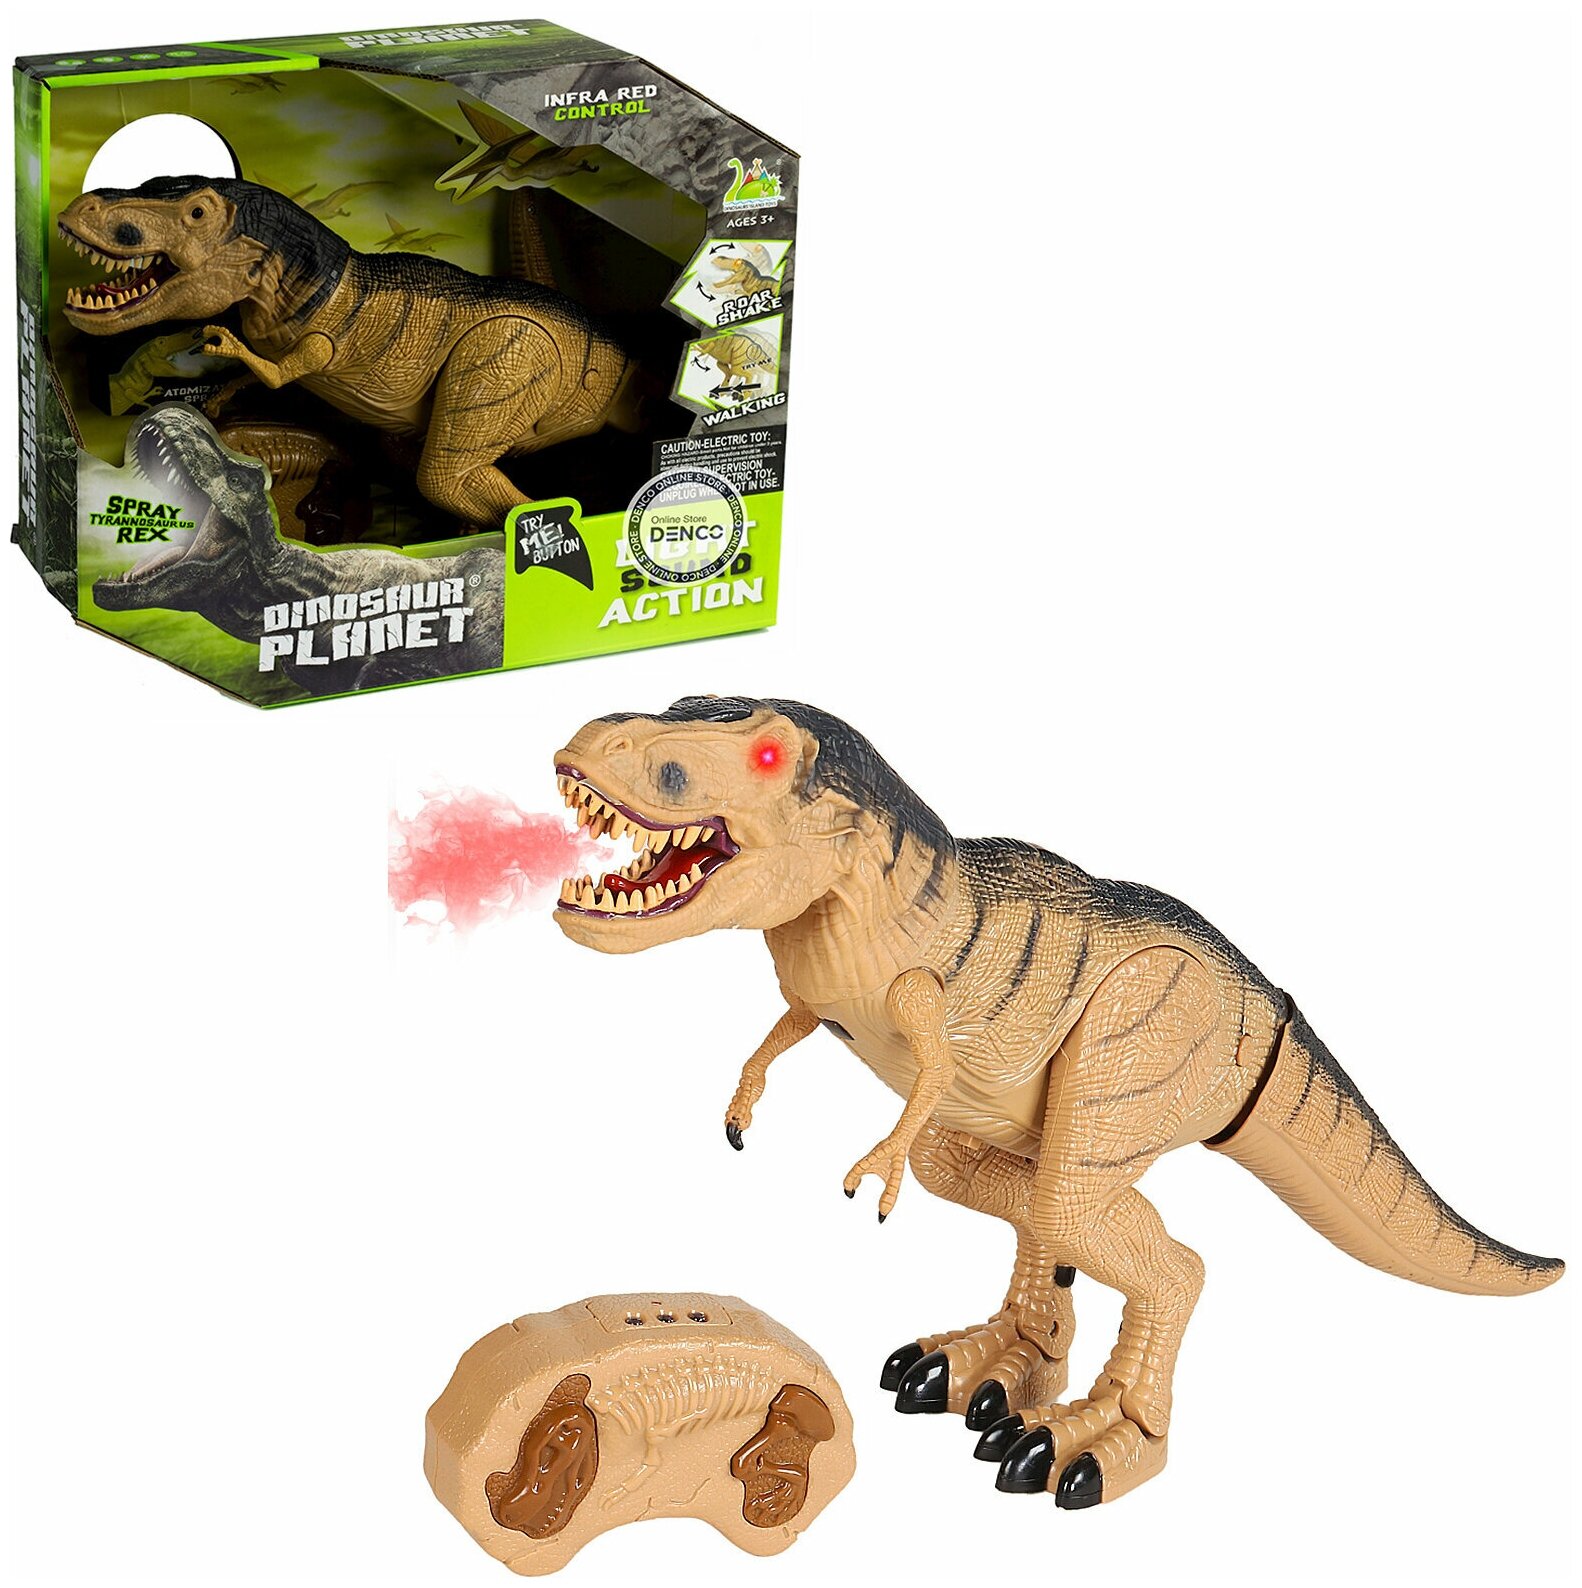 Радиоуправляемая игрушка для мальчика динозавр Тираннозавр REX со световыми и звуковыми эффектами, с функцией пара, бежевый, в подарок для ребенка